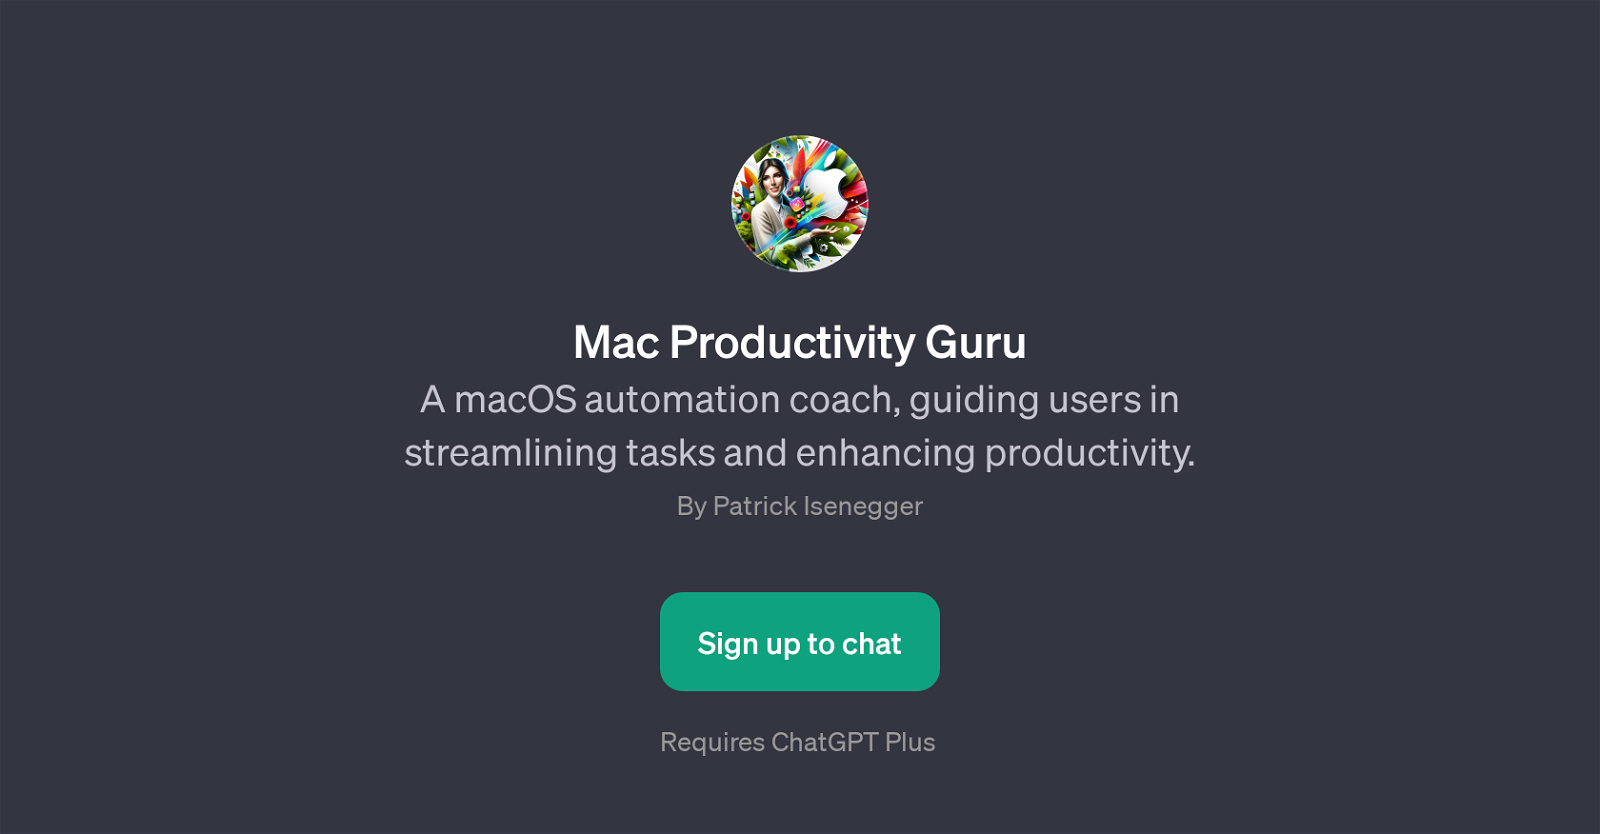 Mac Productivity Guru website